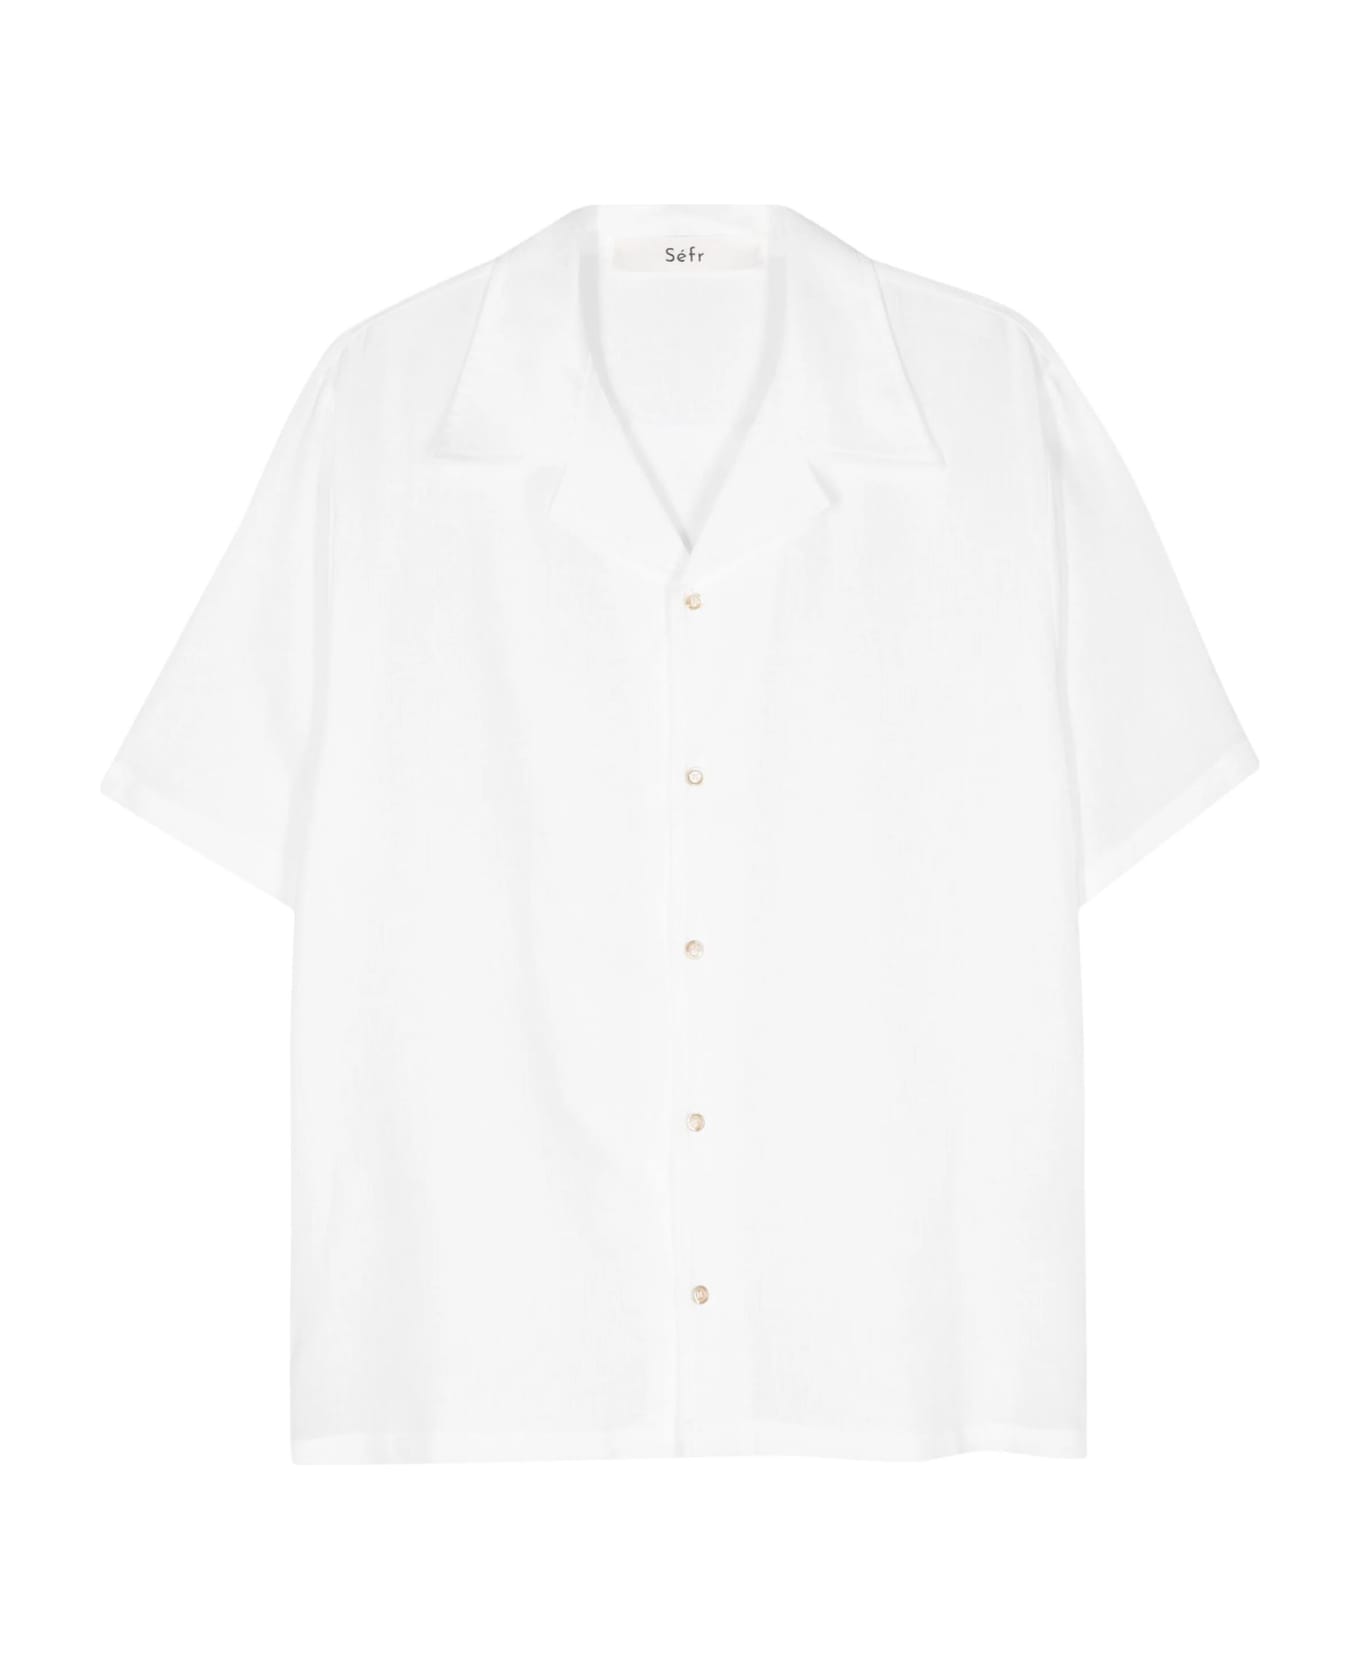 Séfr Sefr Shirts White - White シャツ